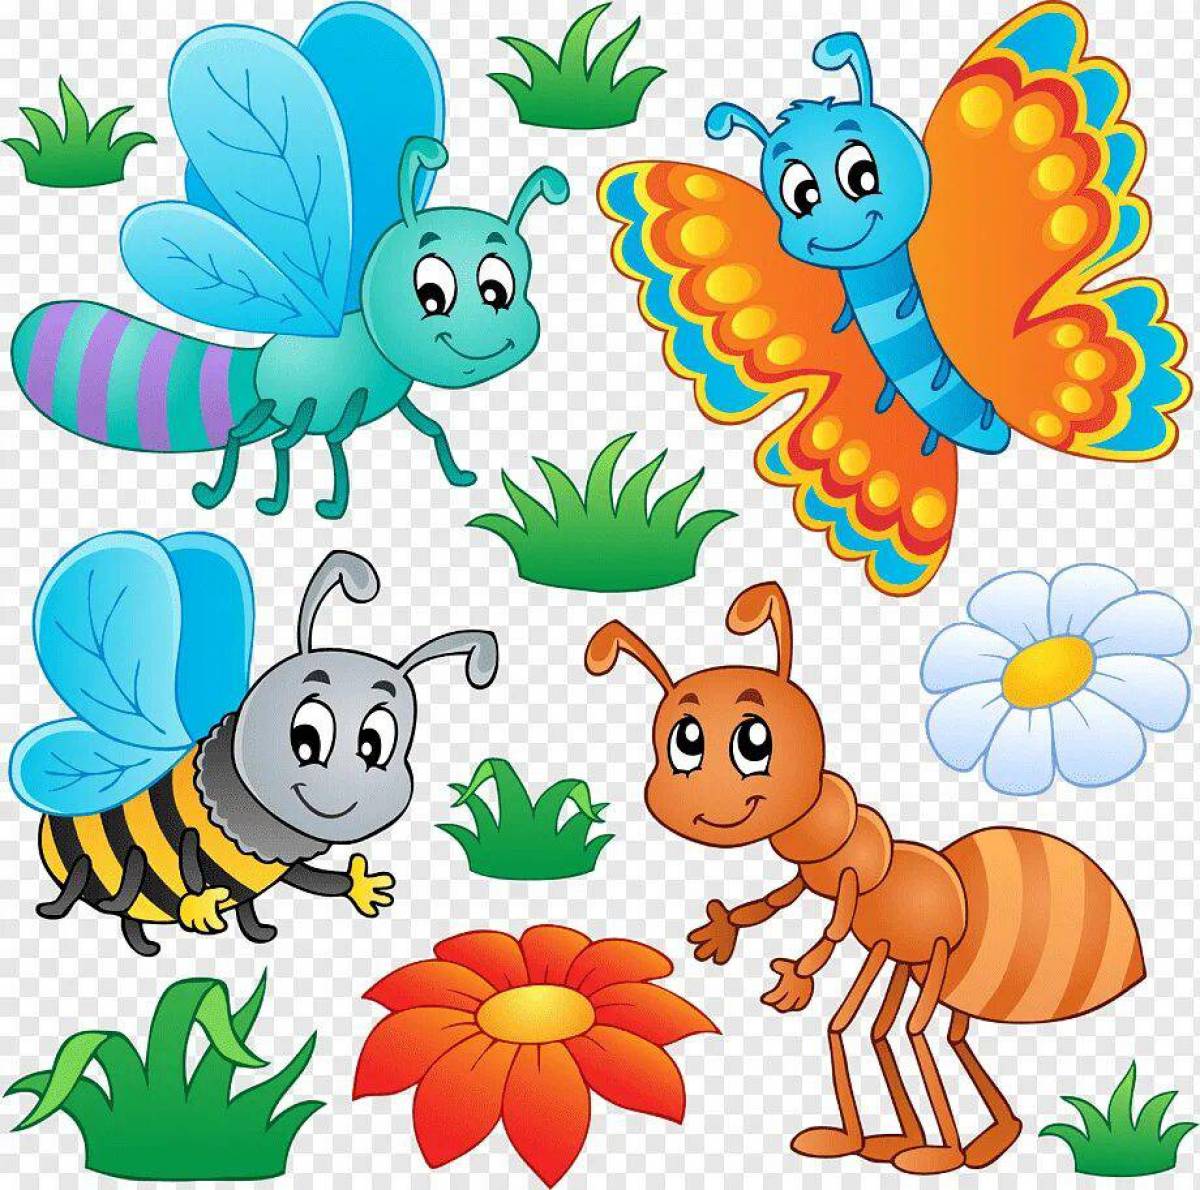 картинки насекомых для детей детского